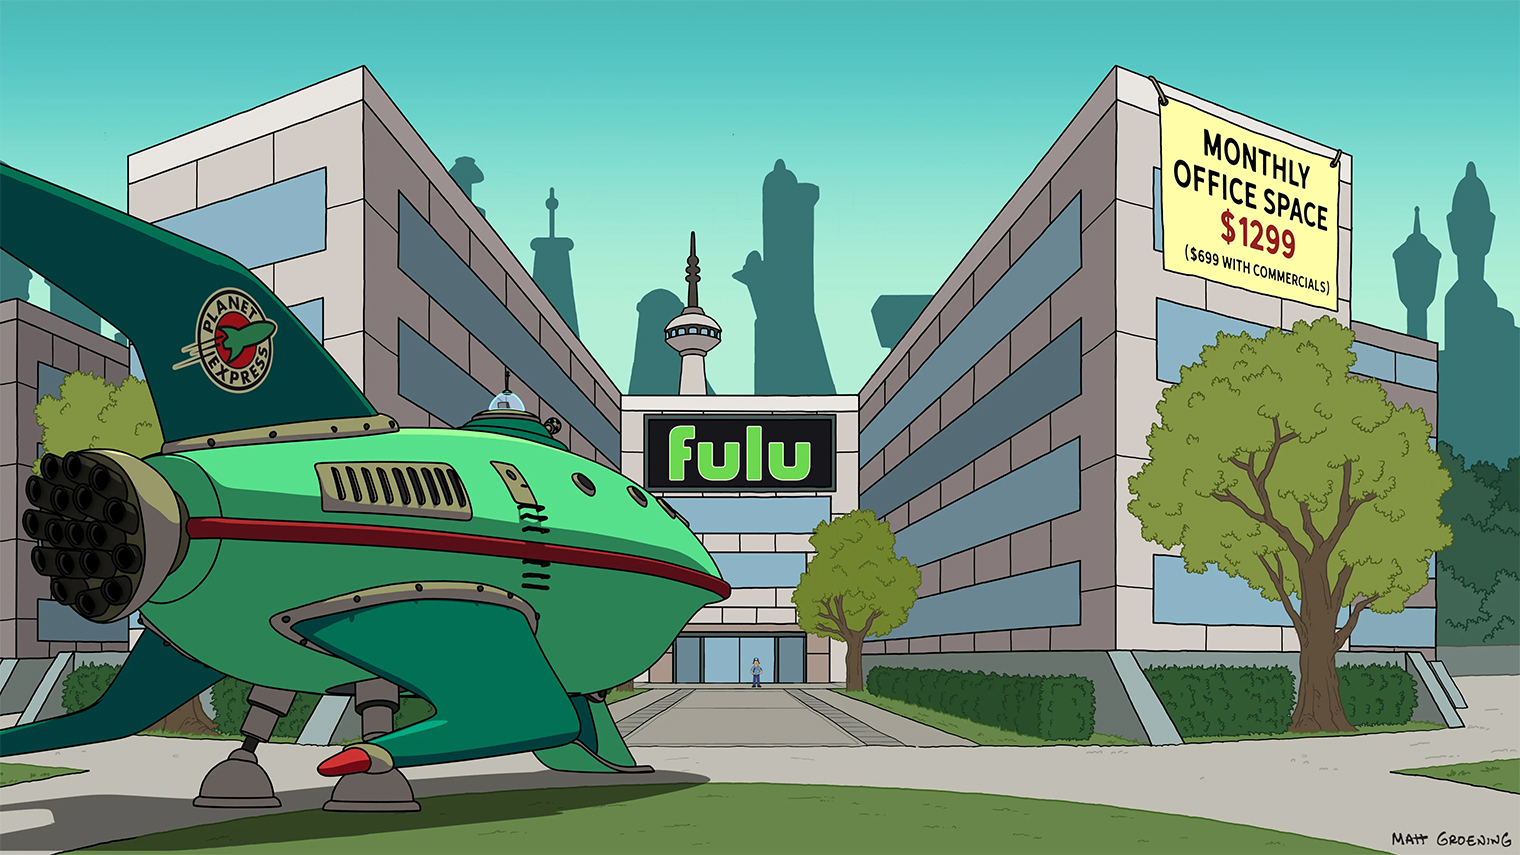 В мире «Футурамы» существует аналог сервиса Hulu — он называется Fulu. Источник: Hulu